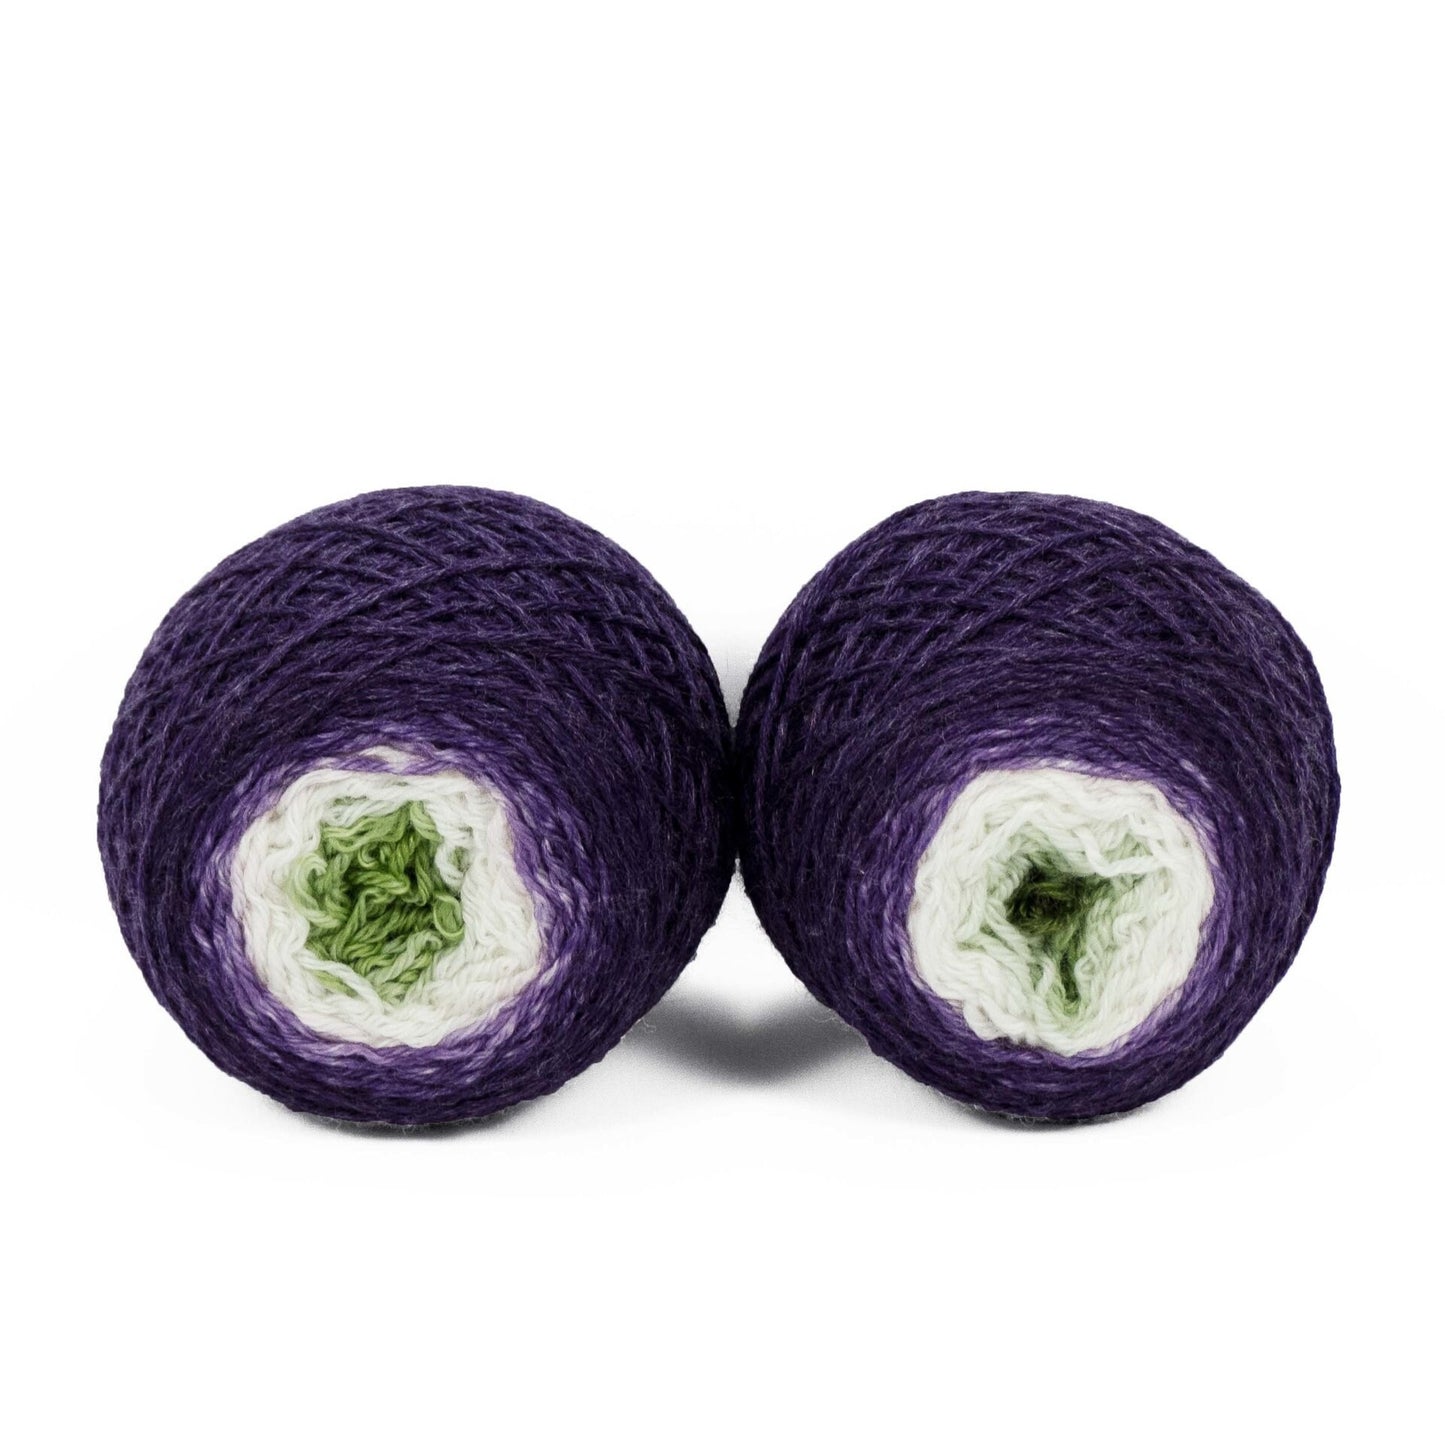 Sock Twins " Fruit Of The Vine " - Lleaf SW Merino/Bamboo Handpainted Gradient Sock Yarn Set